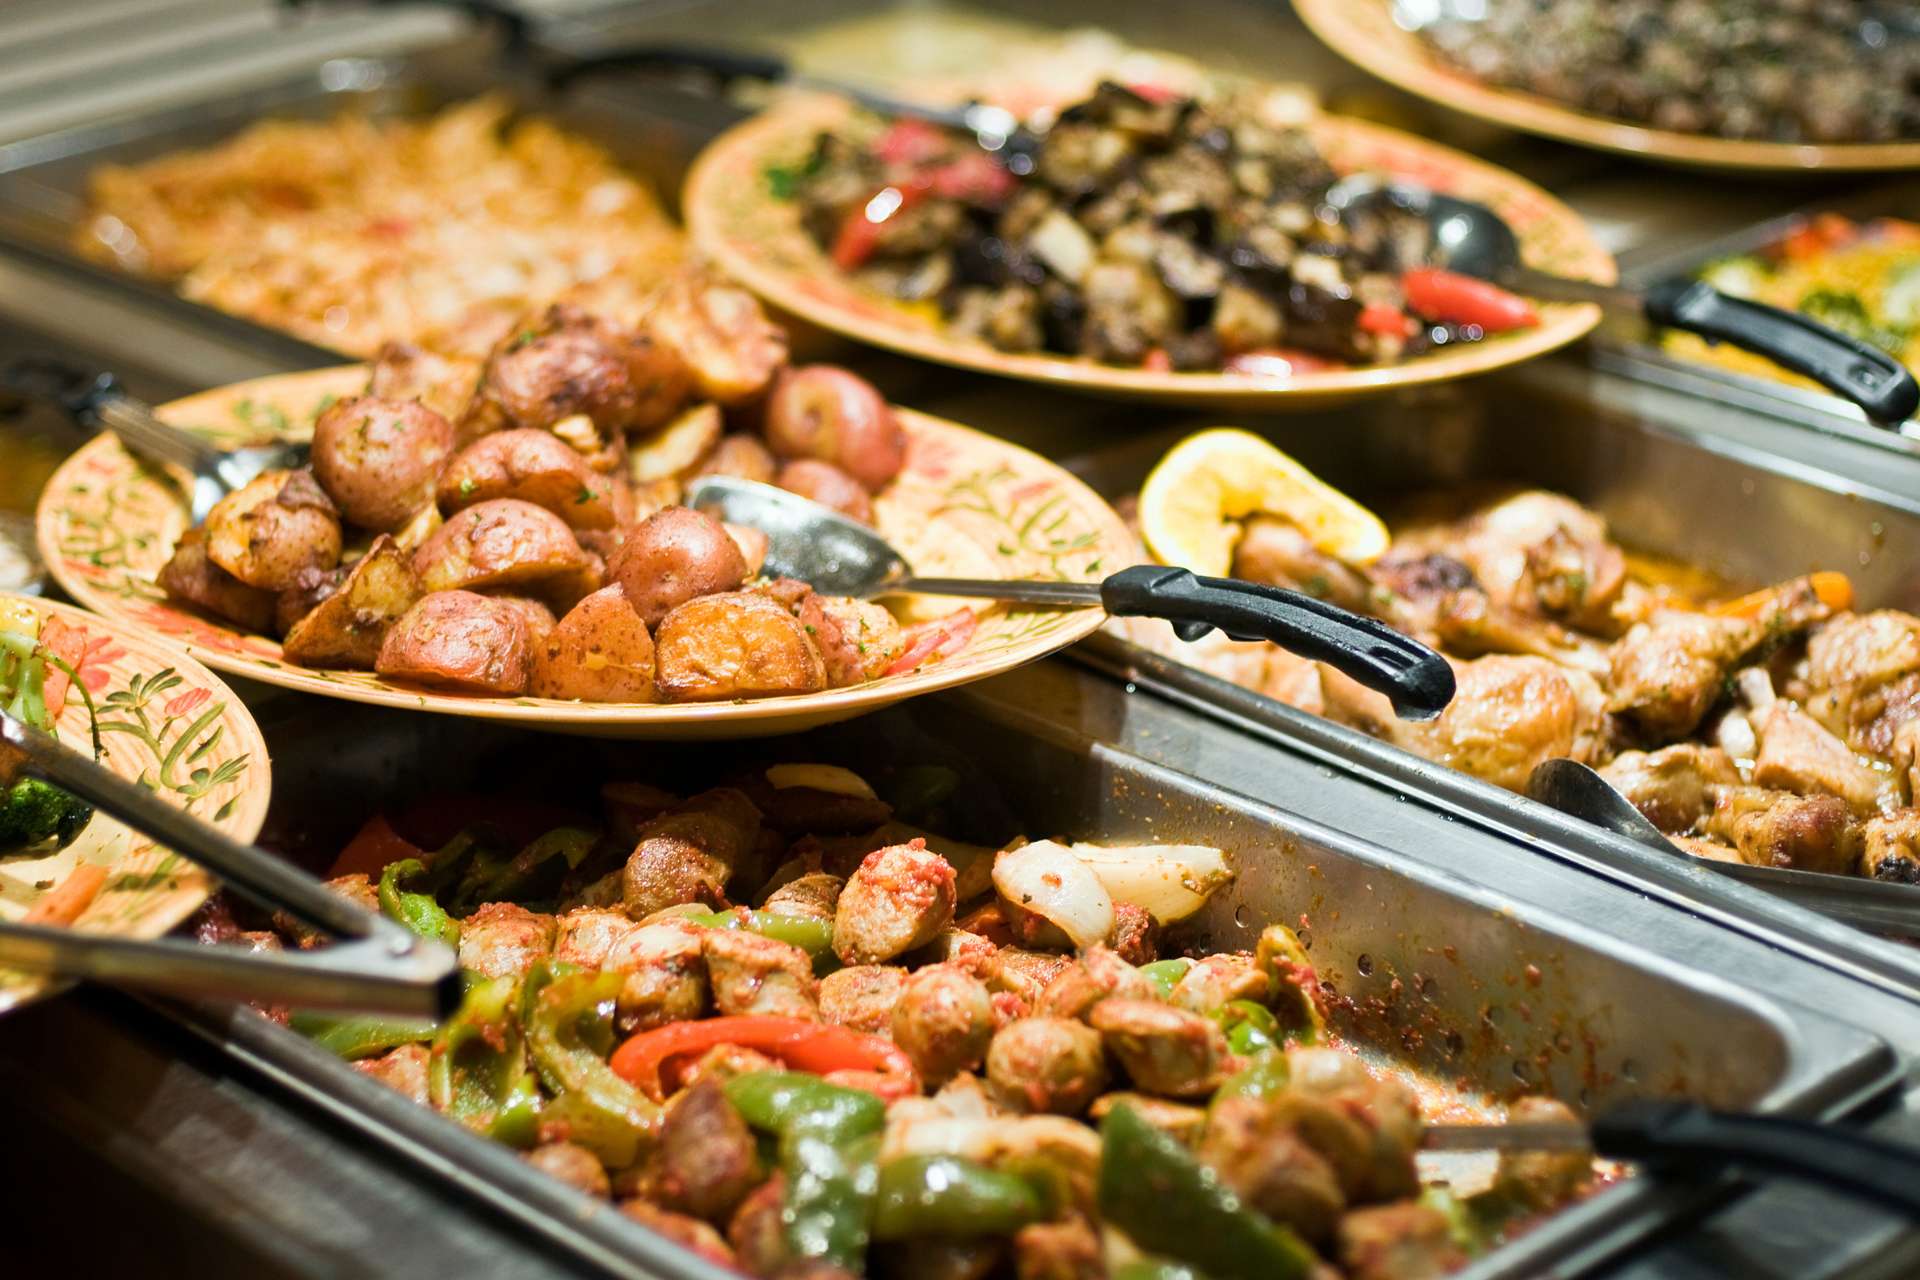 Gastrokardiālais sindroms parasti rodas kopā ar lielu maltīti